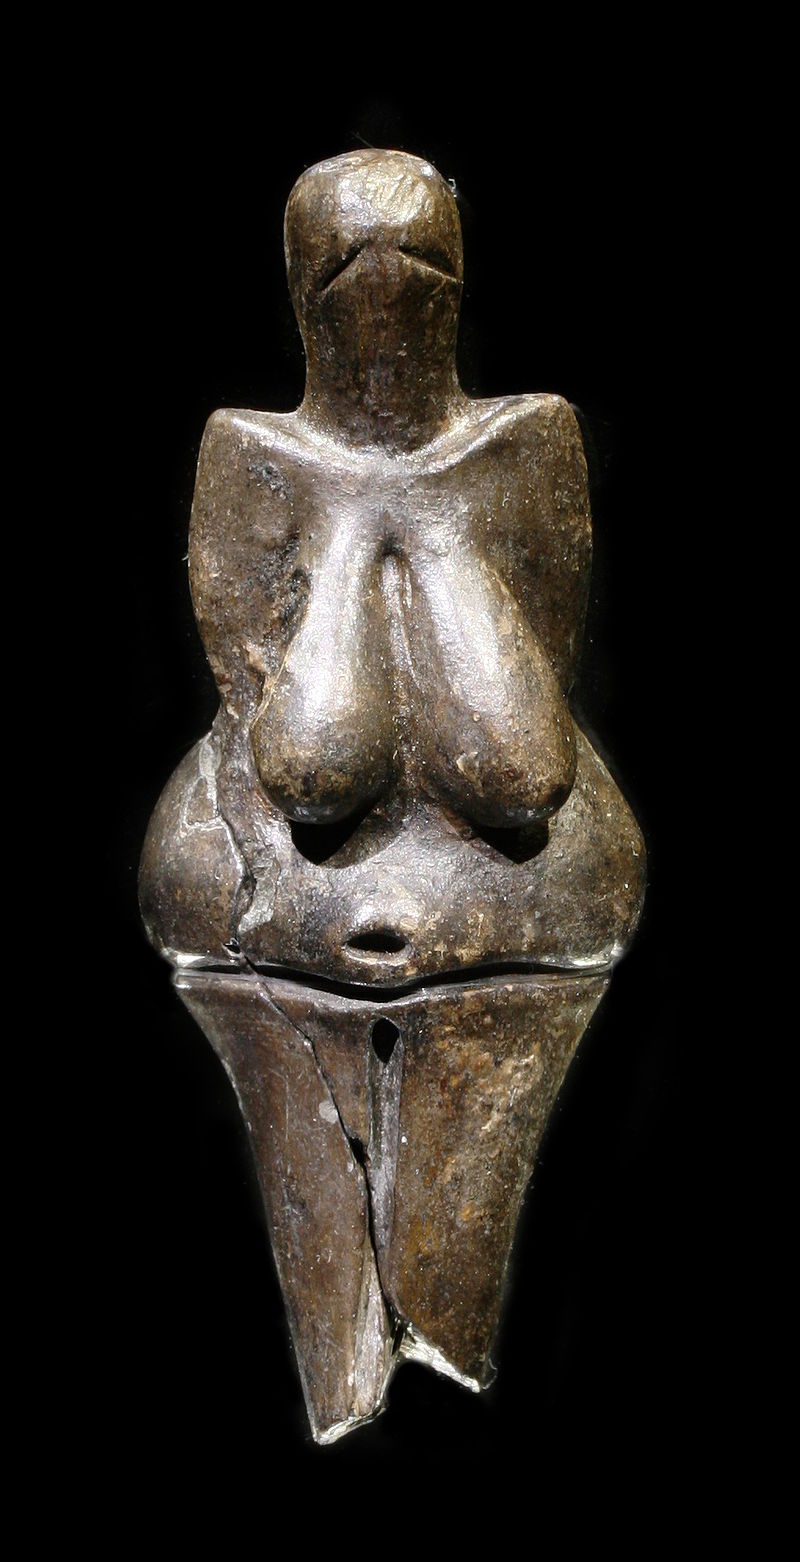 Abartılmış göğüsleri ve kalçasıyla kadın vücudunu temsil eden, parlak koyu renk taştan yapılmış bir heykel. Heykelin yüz hatları yoktur ve iki kolu da görünmemektedir.